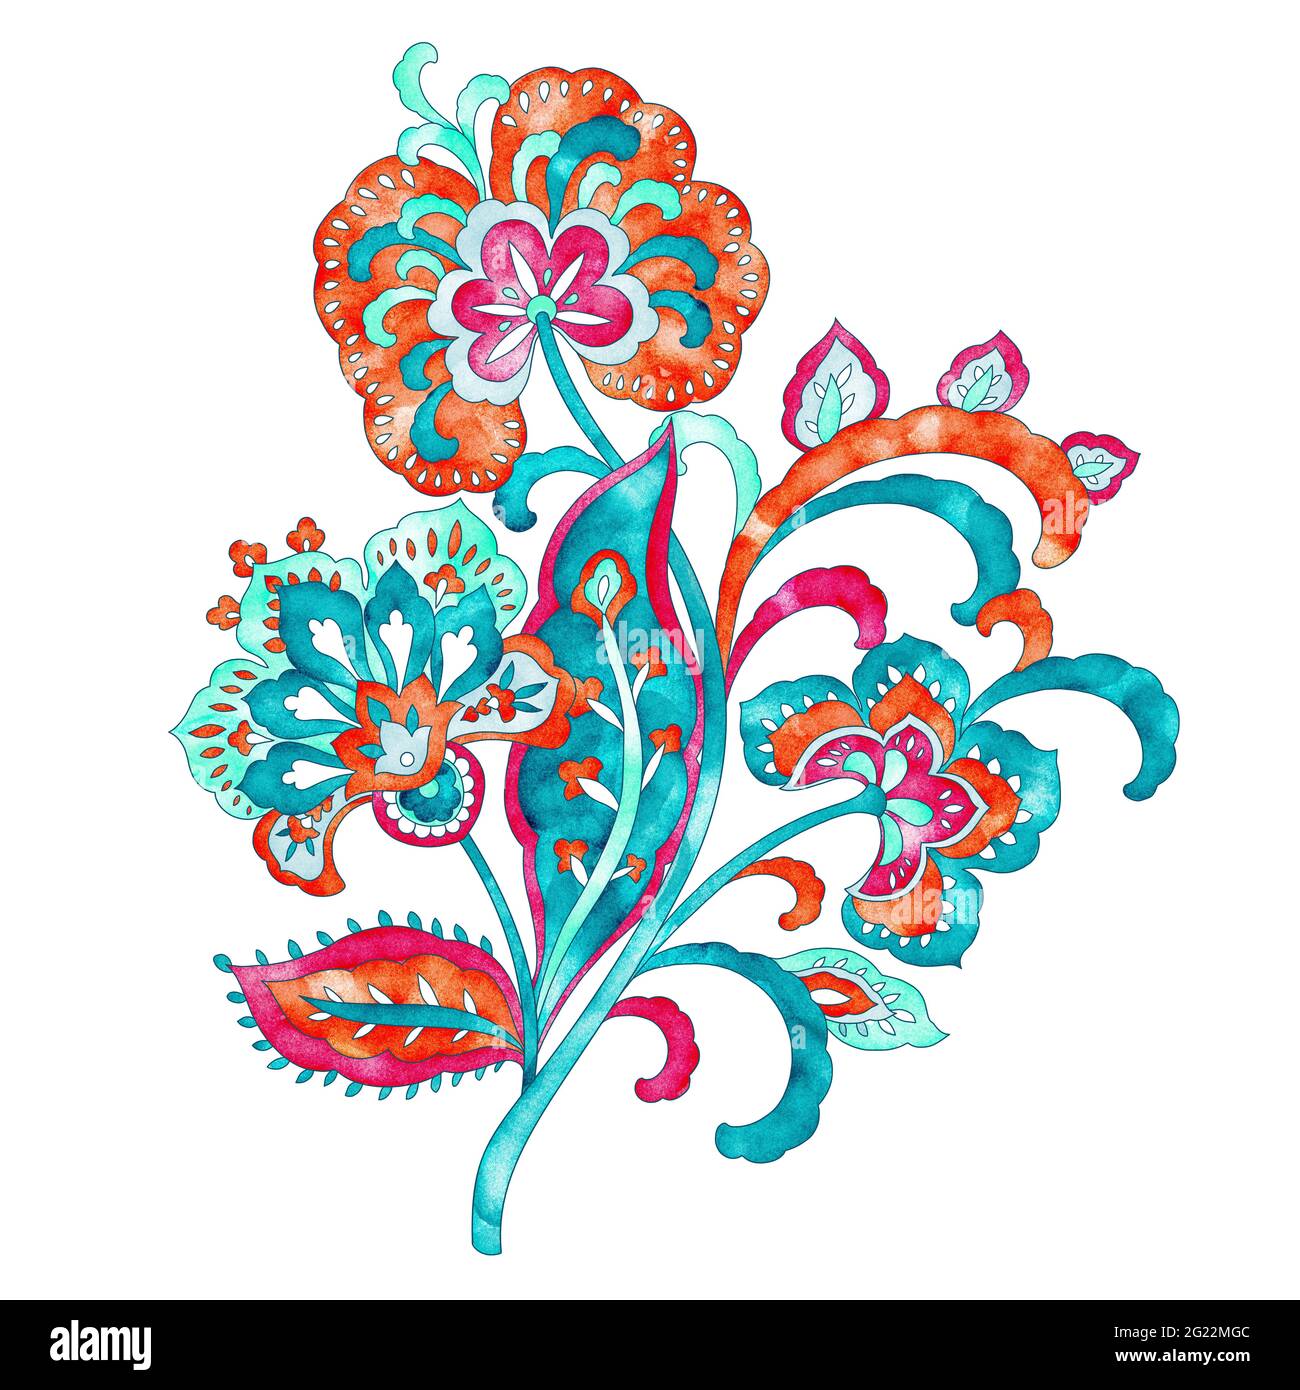 Diseño floral de cachemira, elementos de diseño retro acuarela Foto de stock